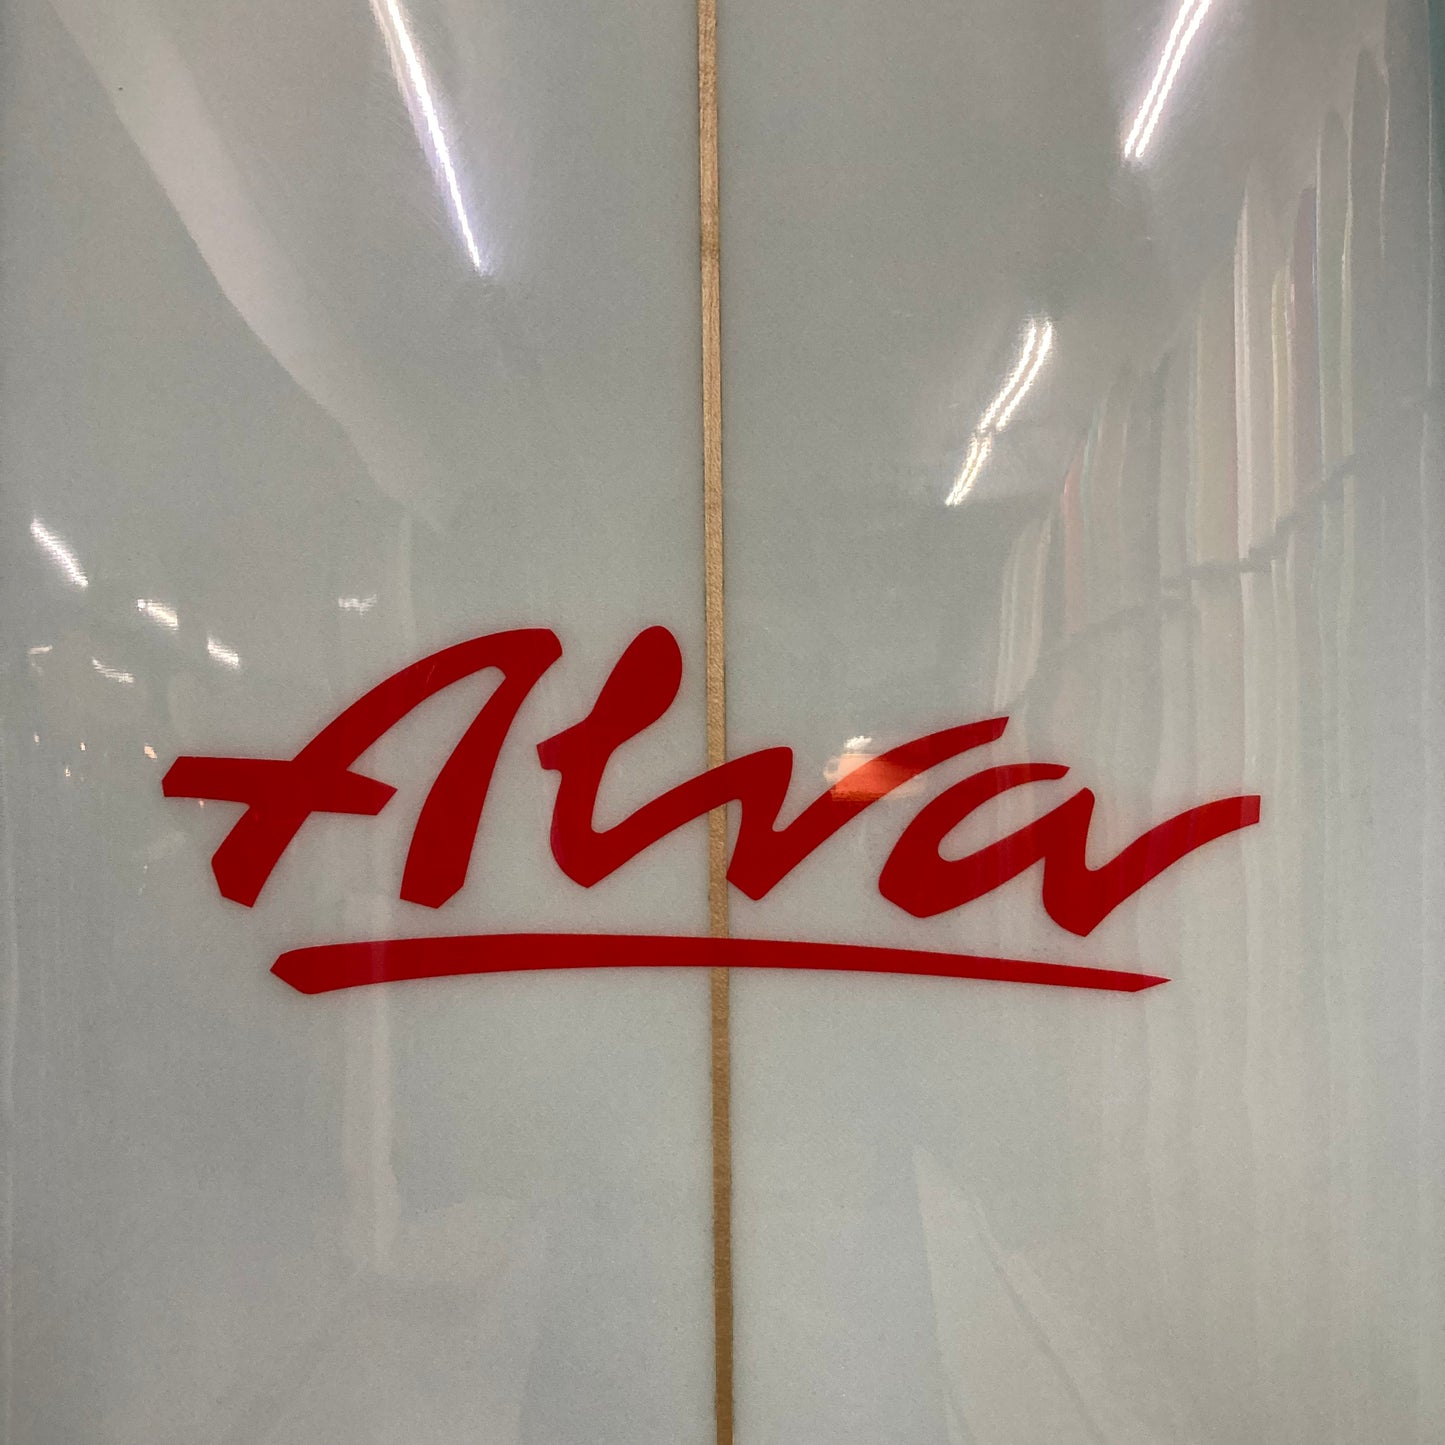 Alva - 7'3 Experience